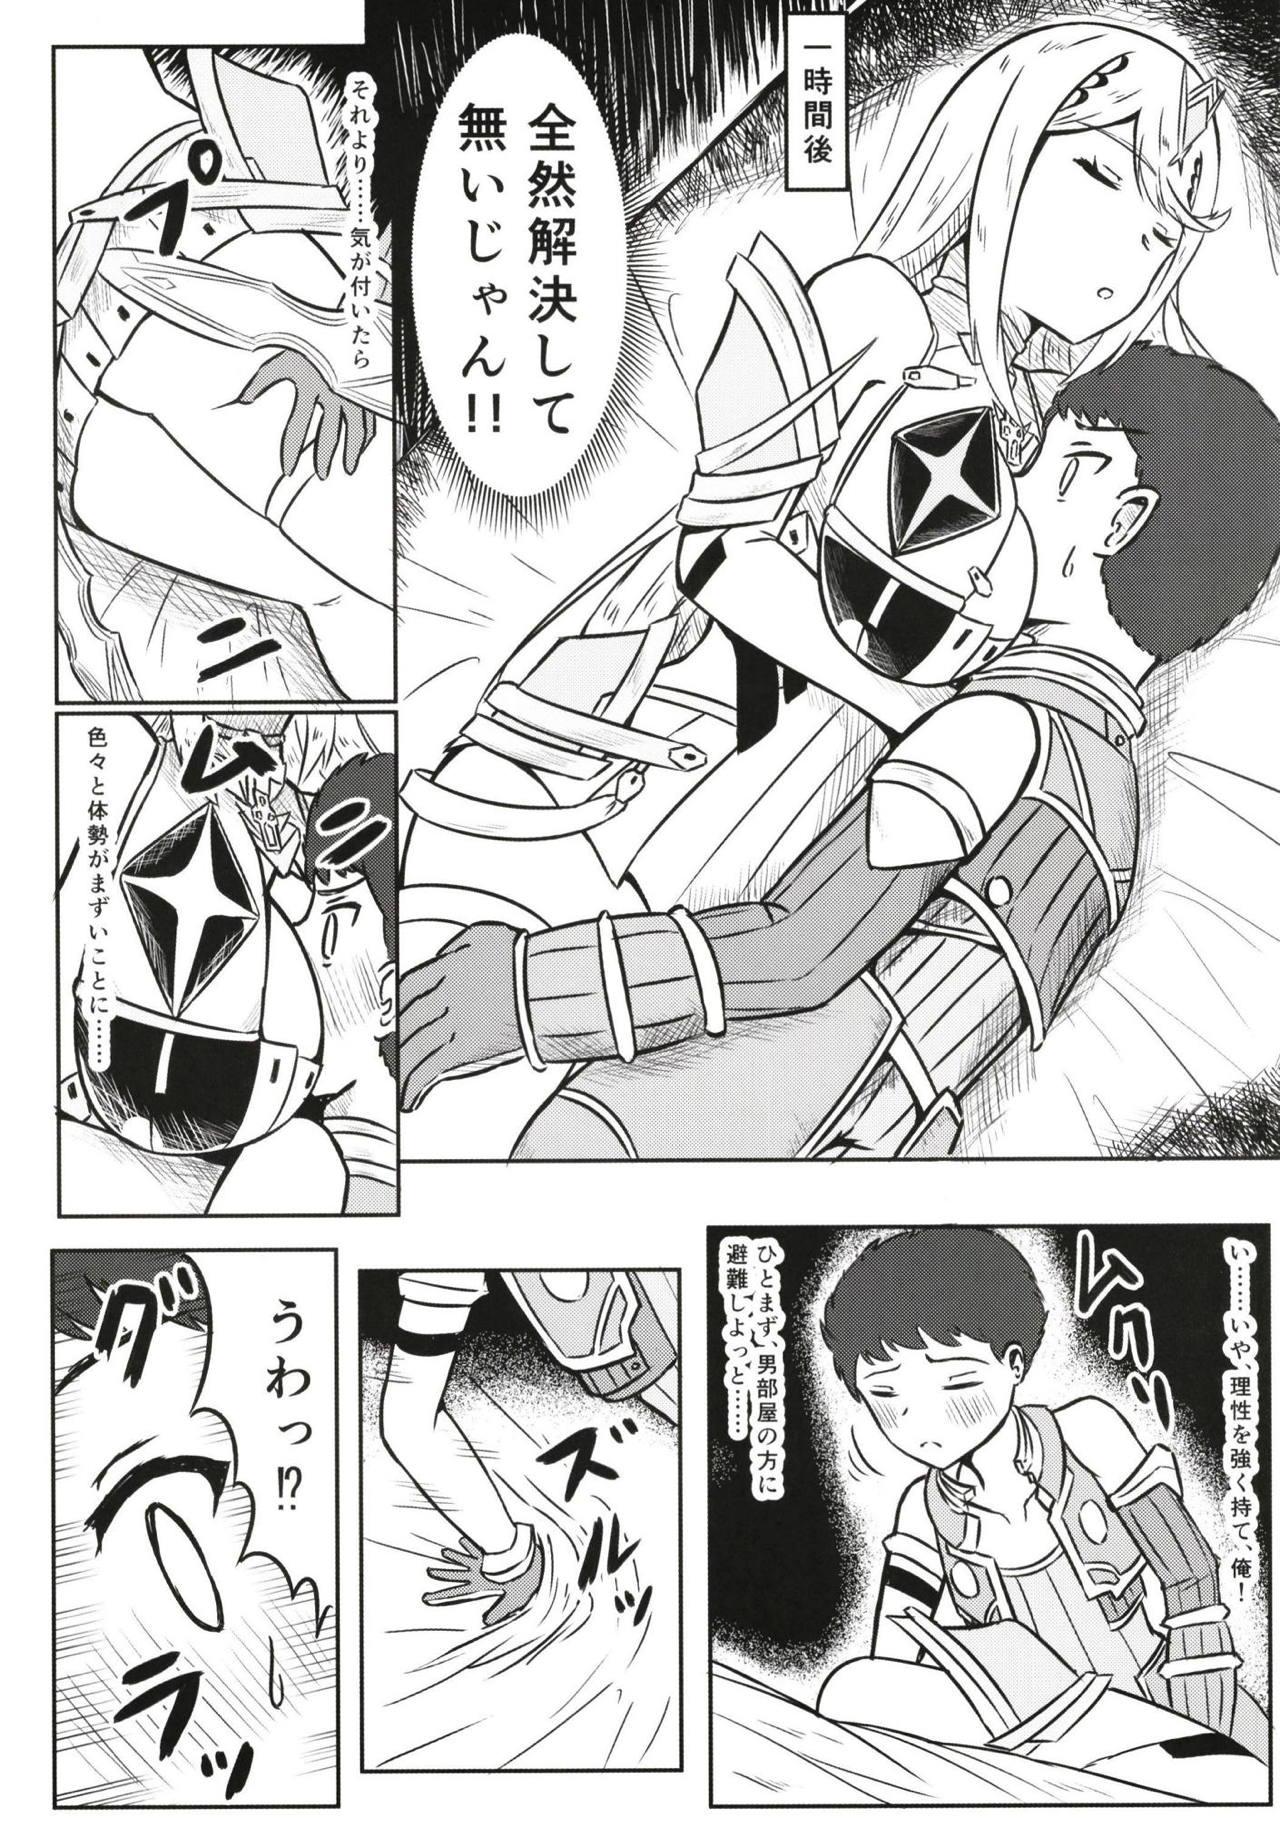 Passivo Yoru no Seihai - Xenoblade chronicles 2 Gordibuena - Page 4